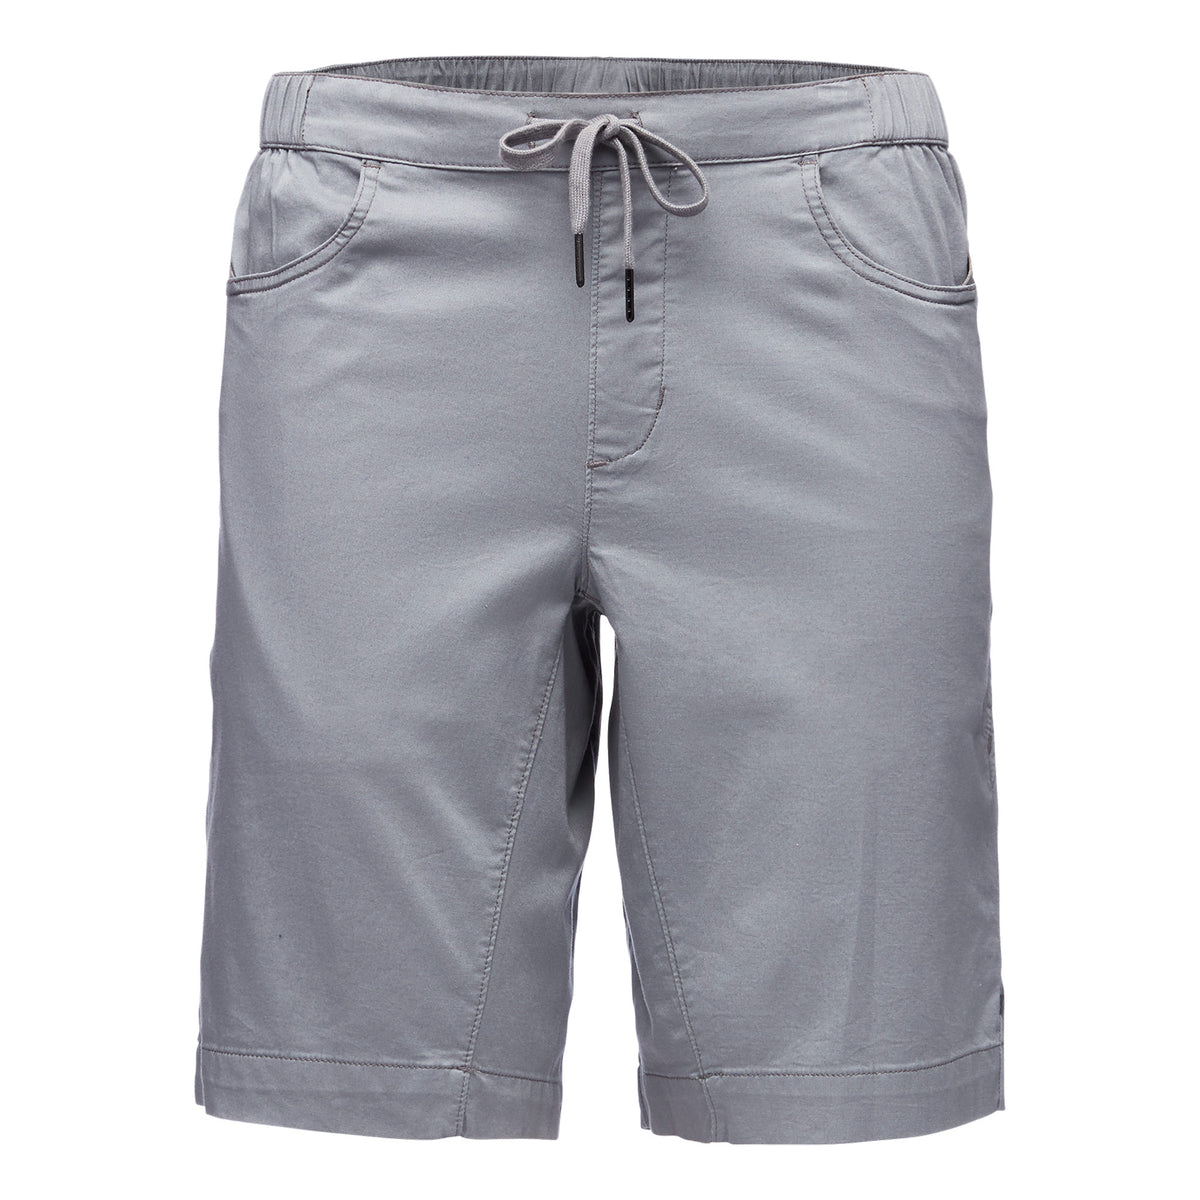 a grey pair of shorts